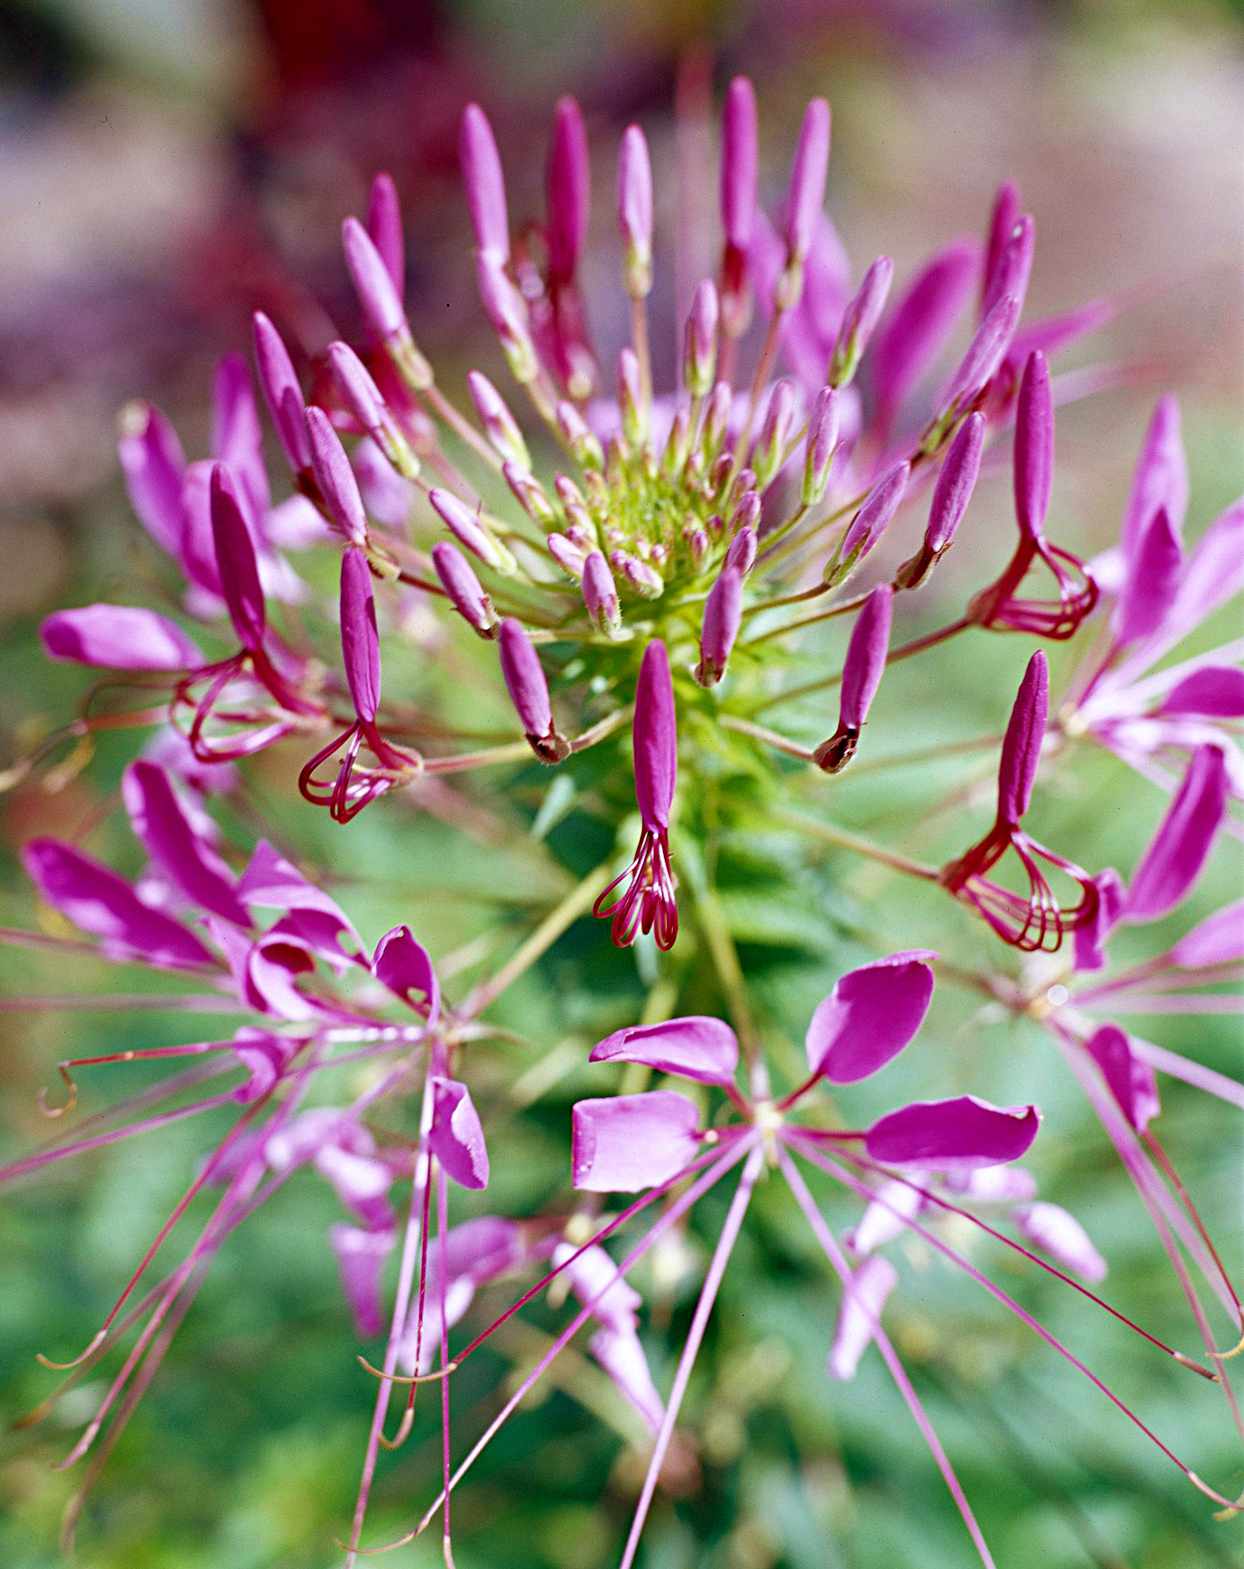 'Violet Queen' spider flower